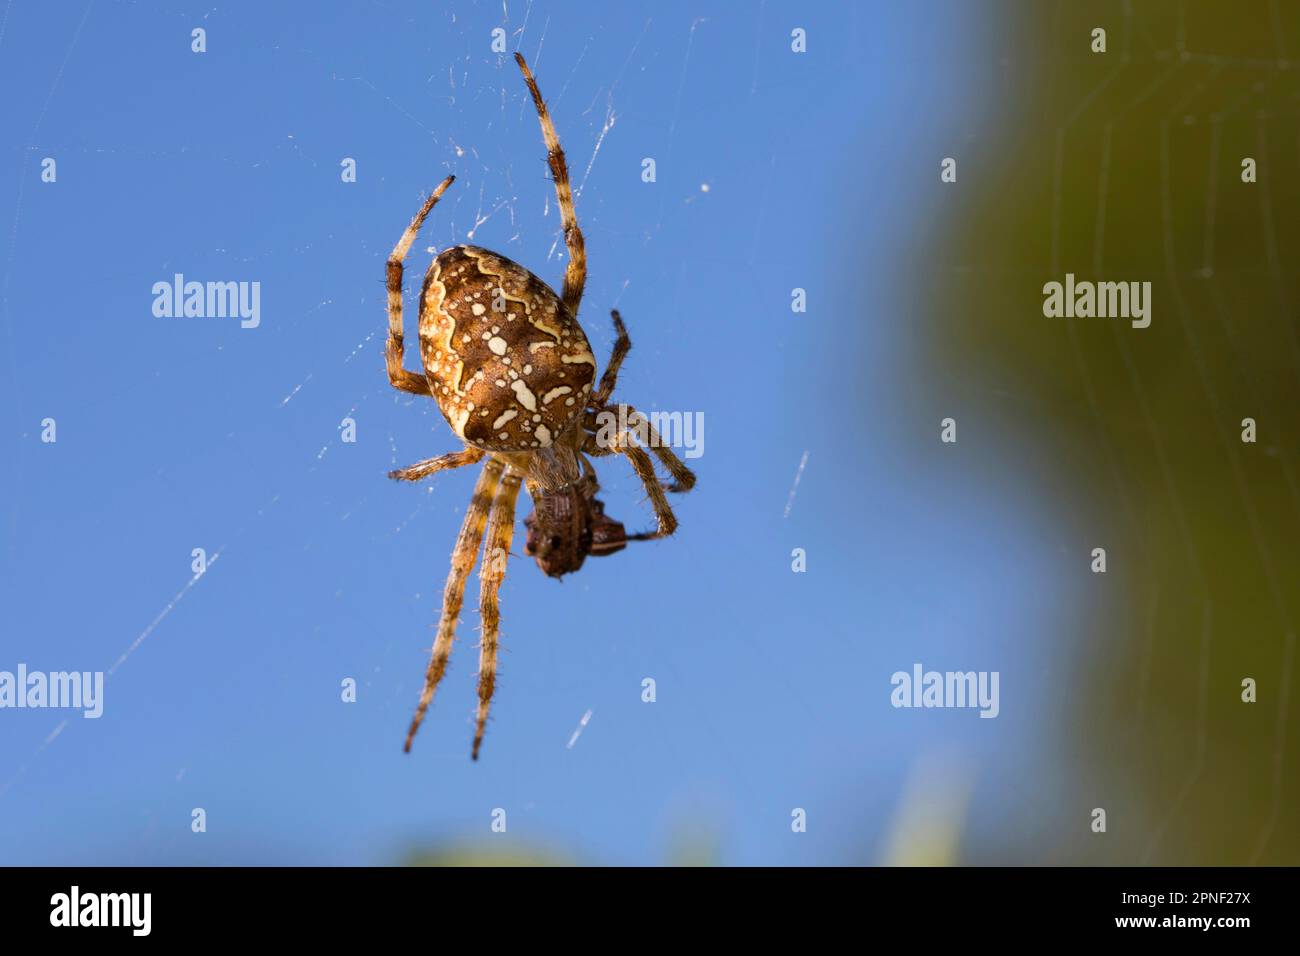 Cross orbweaver, jardin araignée, spider Araneus diadematus (croix), dans le web, Allemagne Banque D'Images